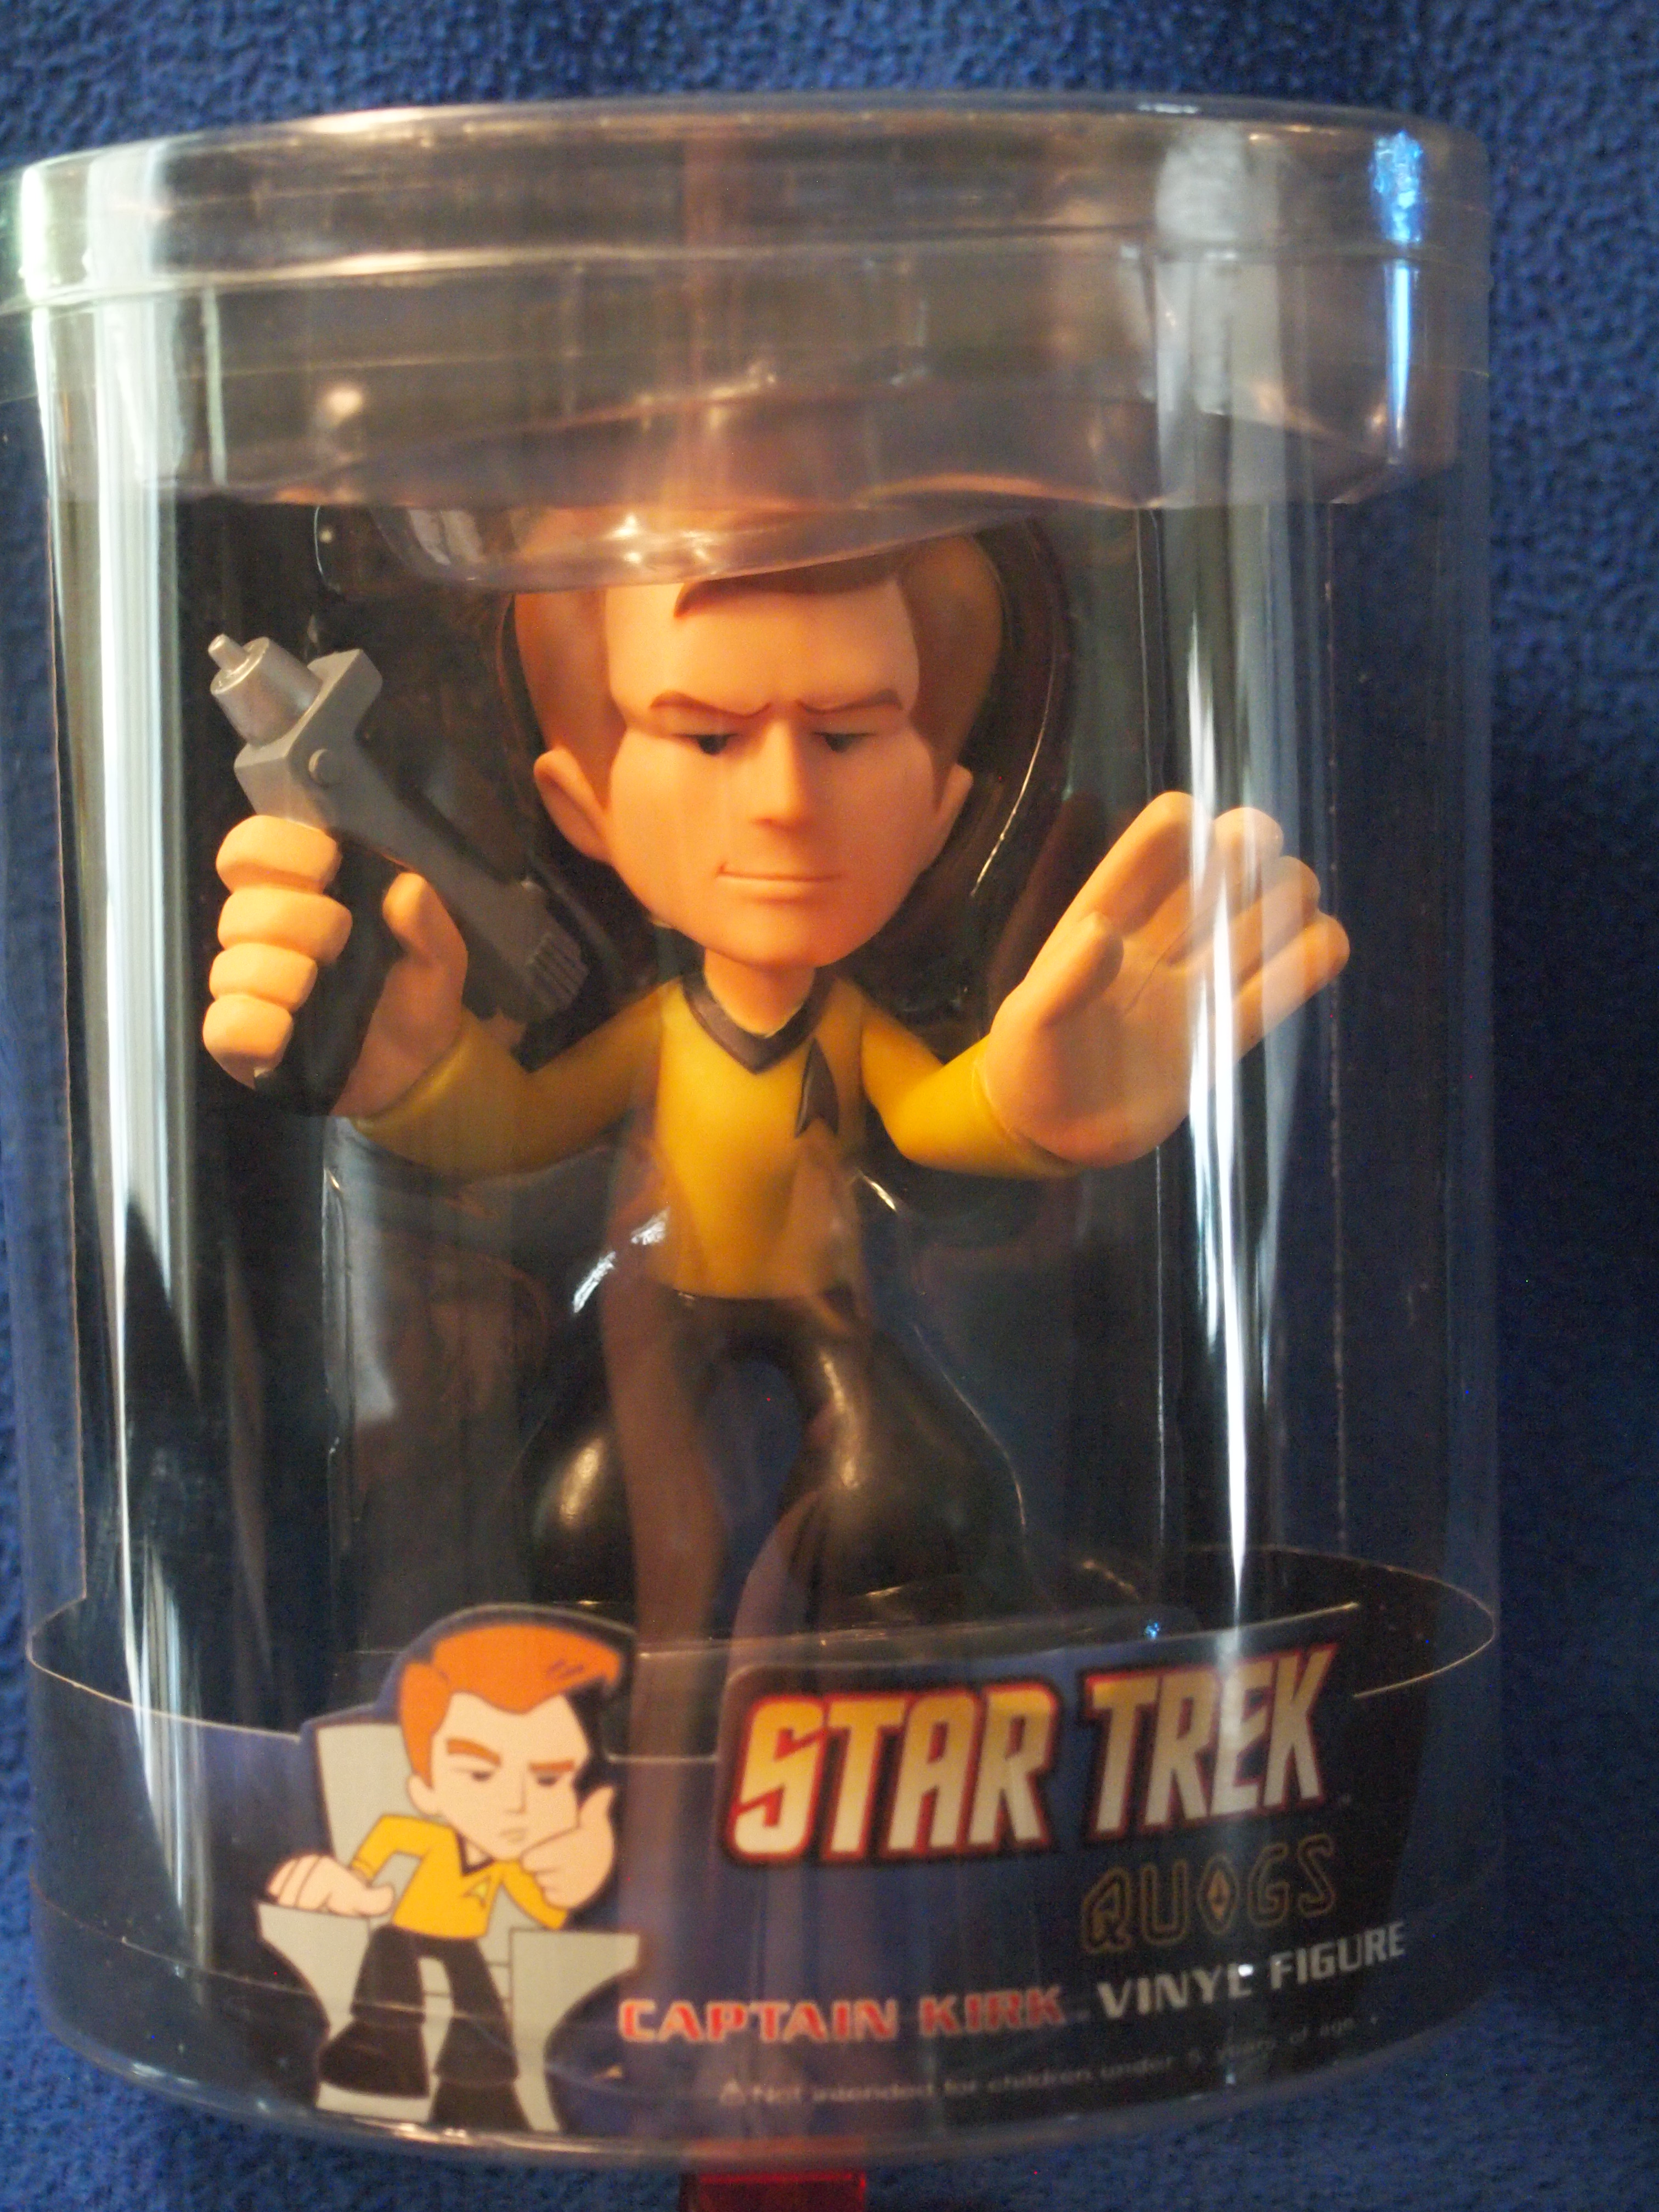 Star Trek Quogs Captain Kirk Vinyl Figure